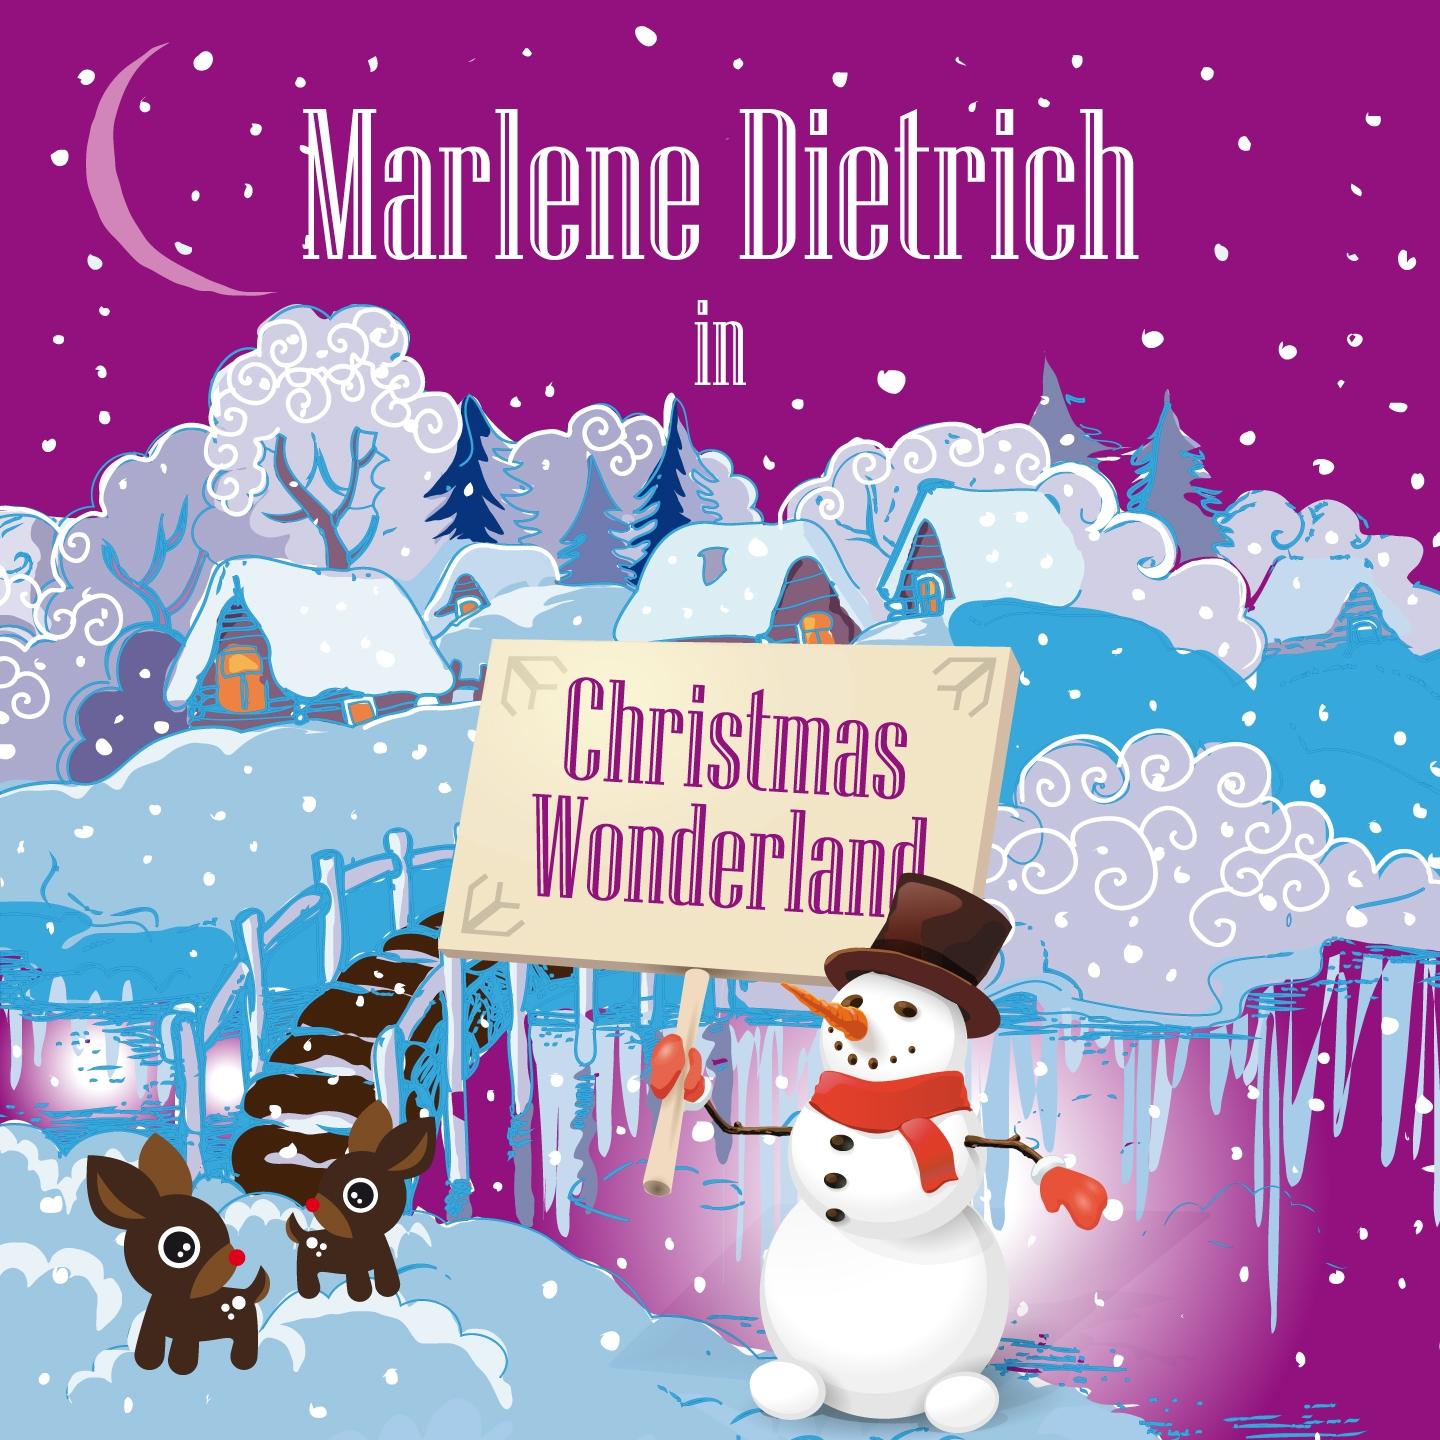 Marlene Dietrich in Christmas Wonderland